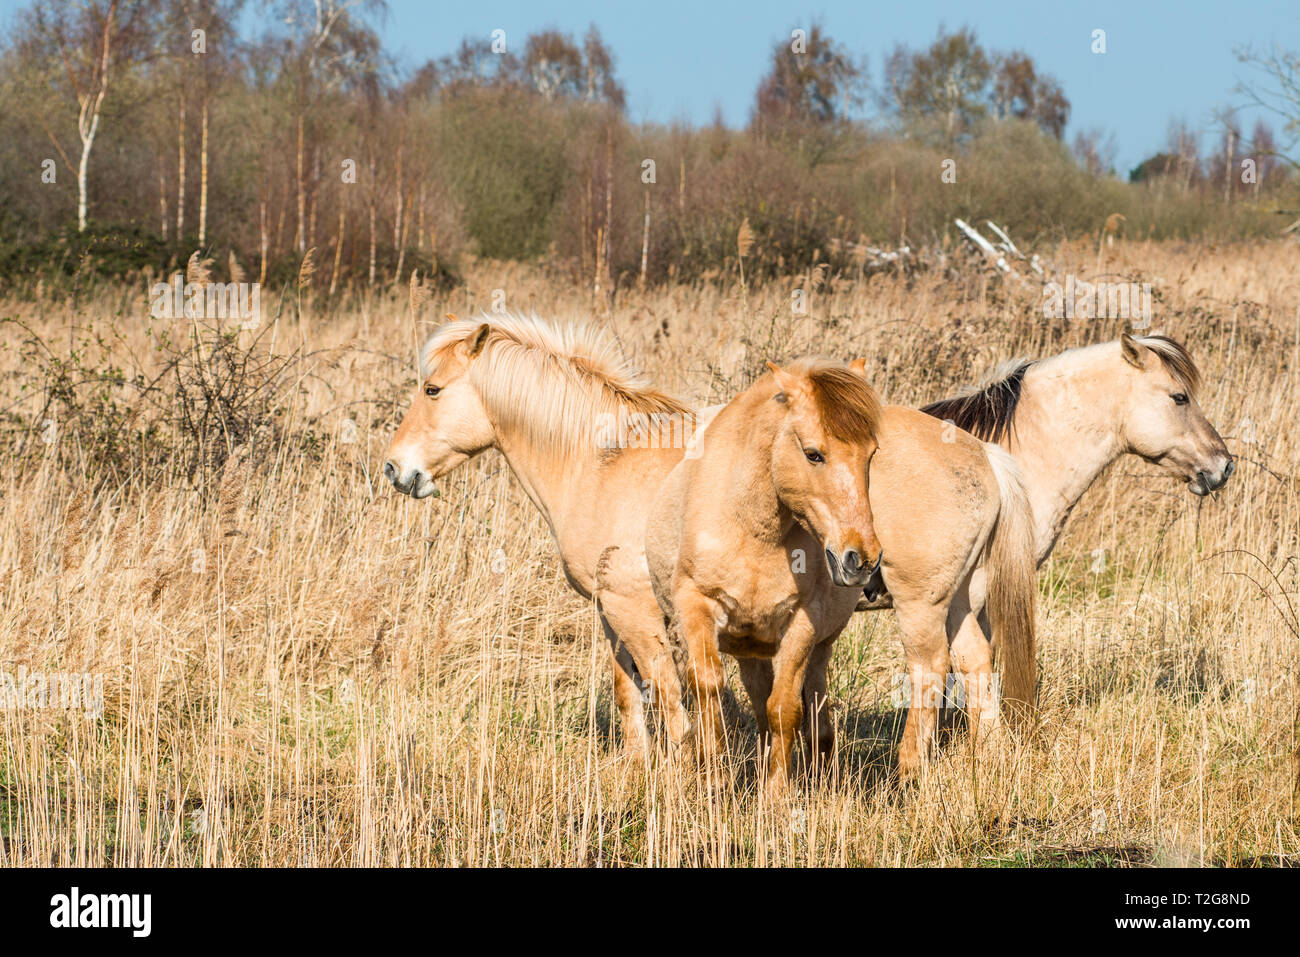 Wild Konik Ponys am Ufer des Burwell Lode Binnengewässern auf Wicken Fen Naturschutzgebiet, Cambridgeshire, England, Großbritannien Stockfoto